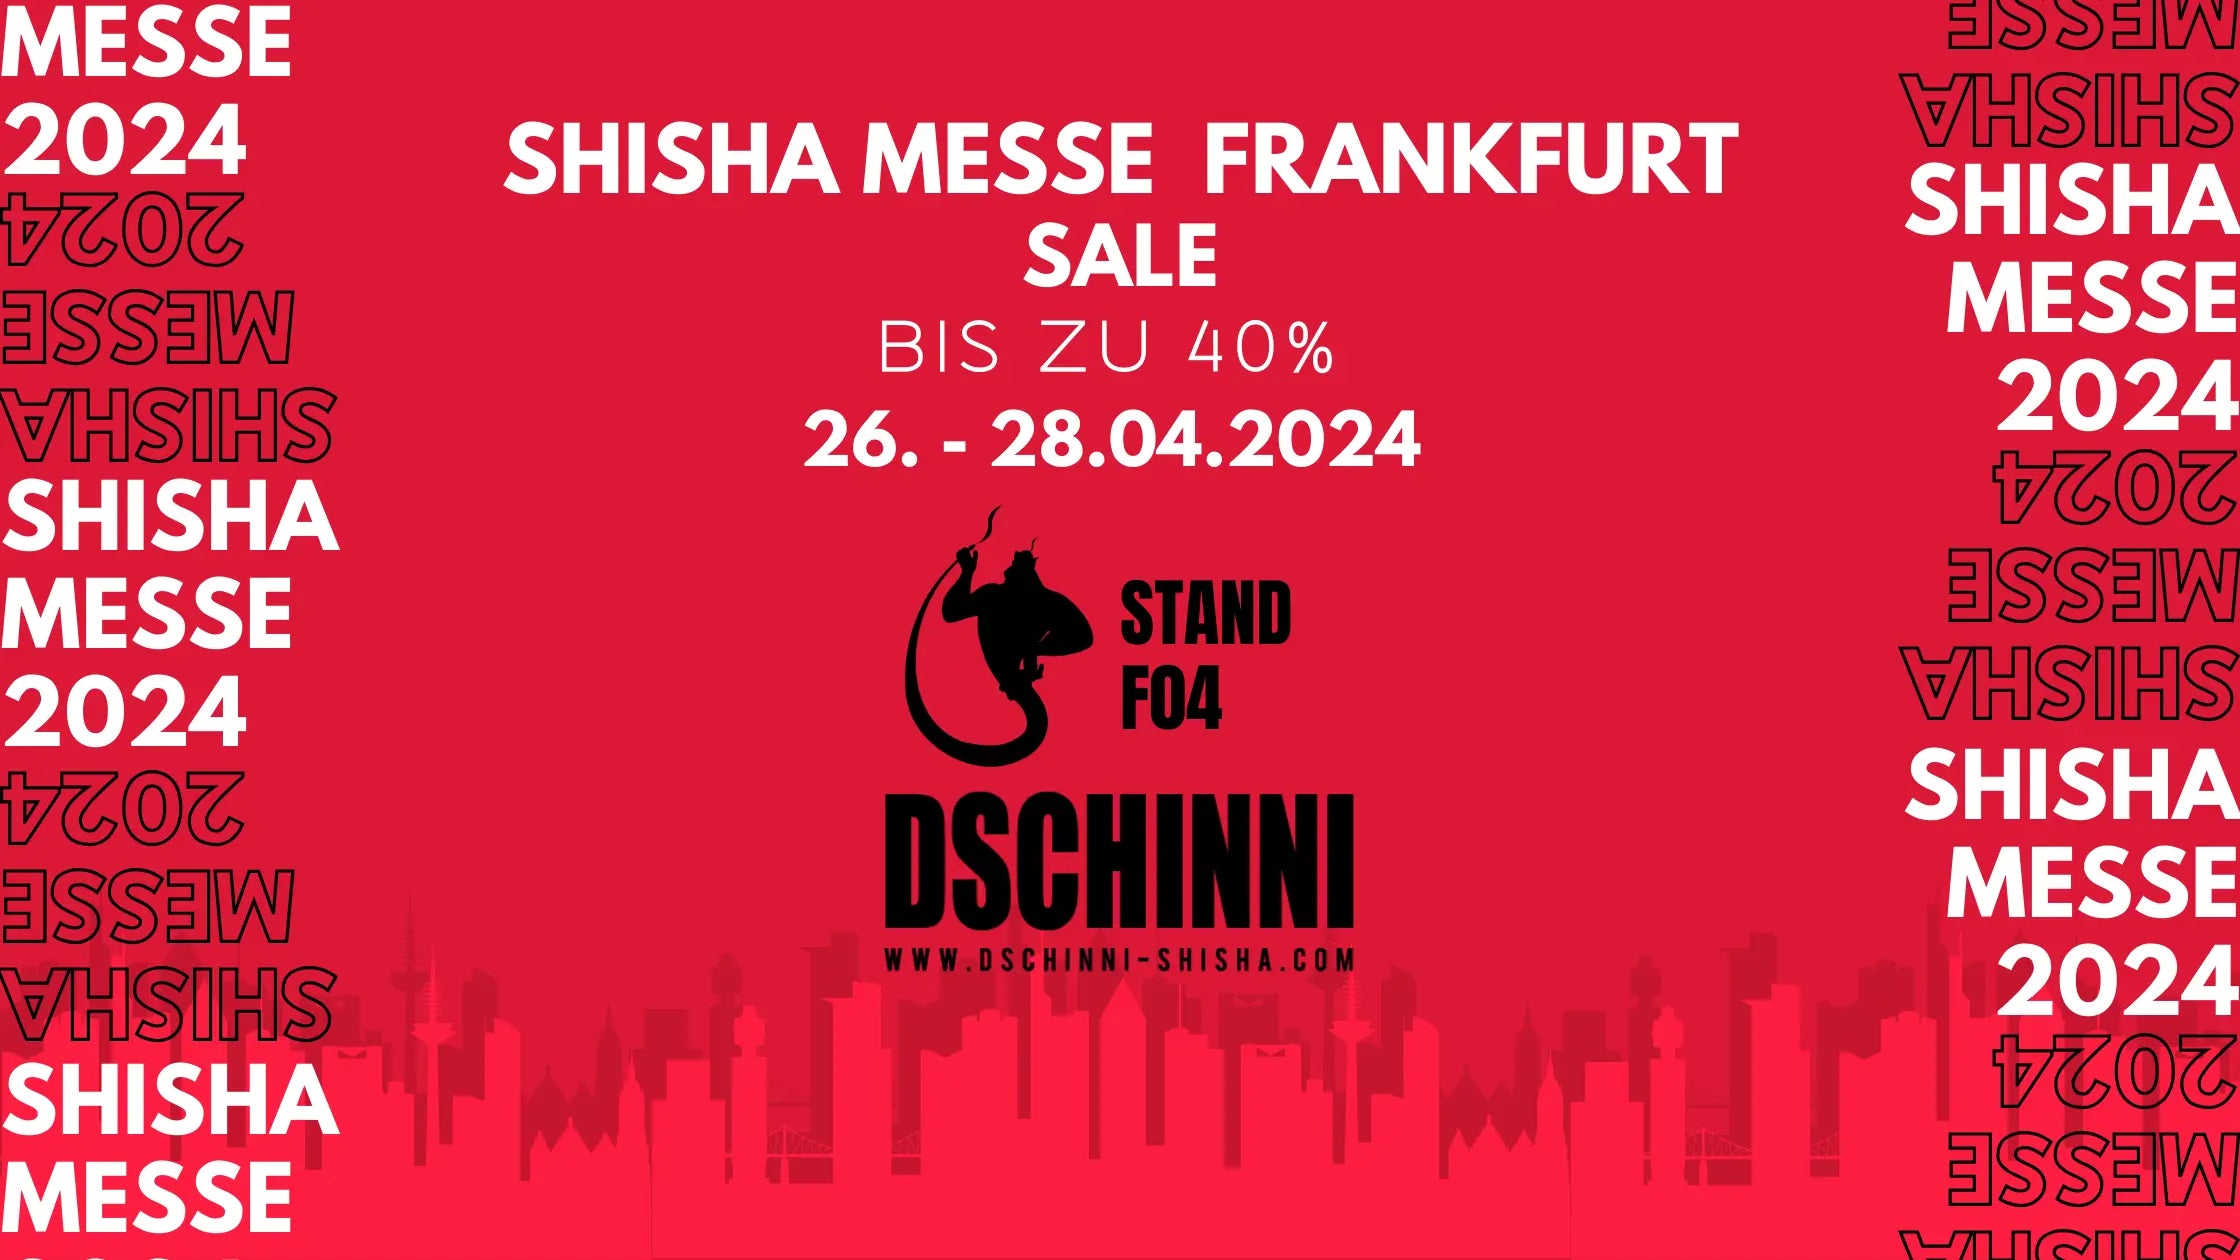 Shisha Messe Frankfurt Dschinni Shisha